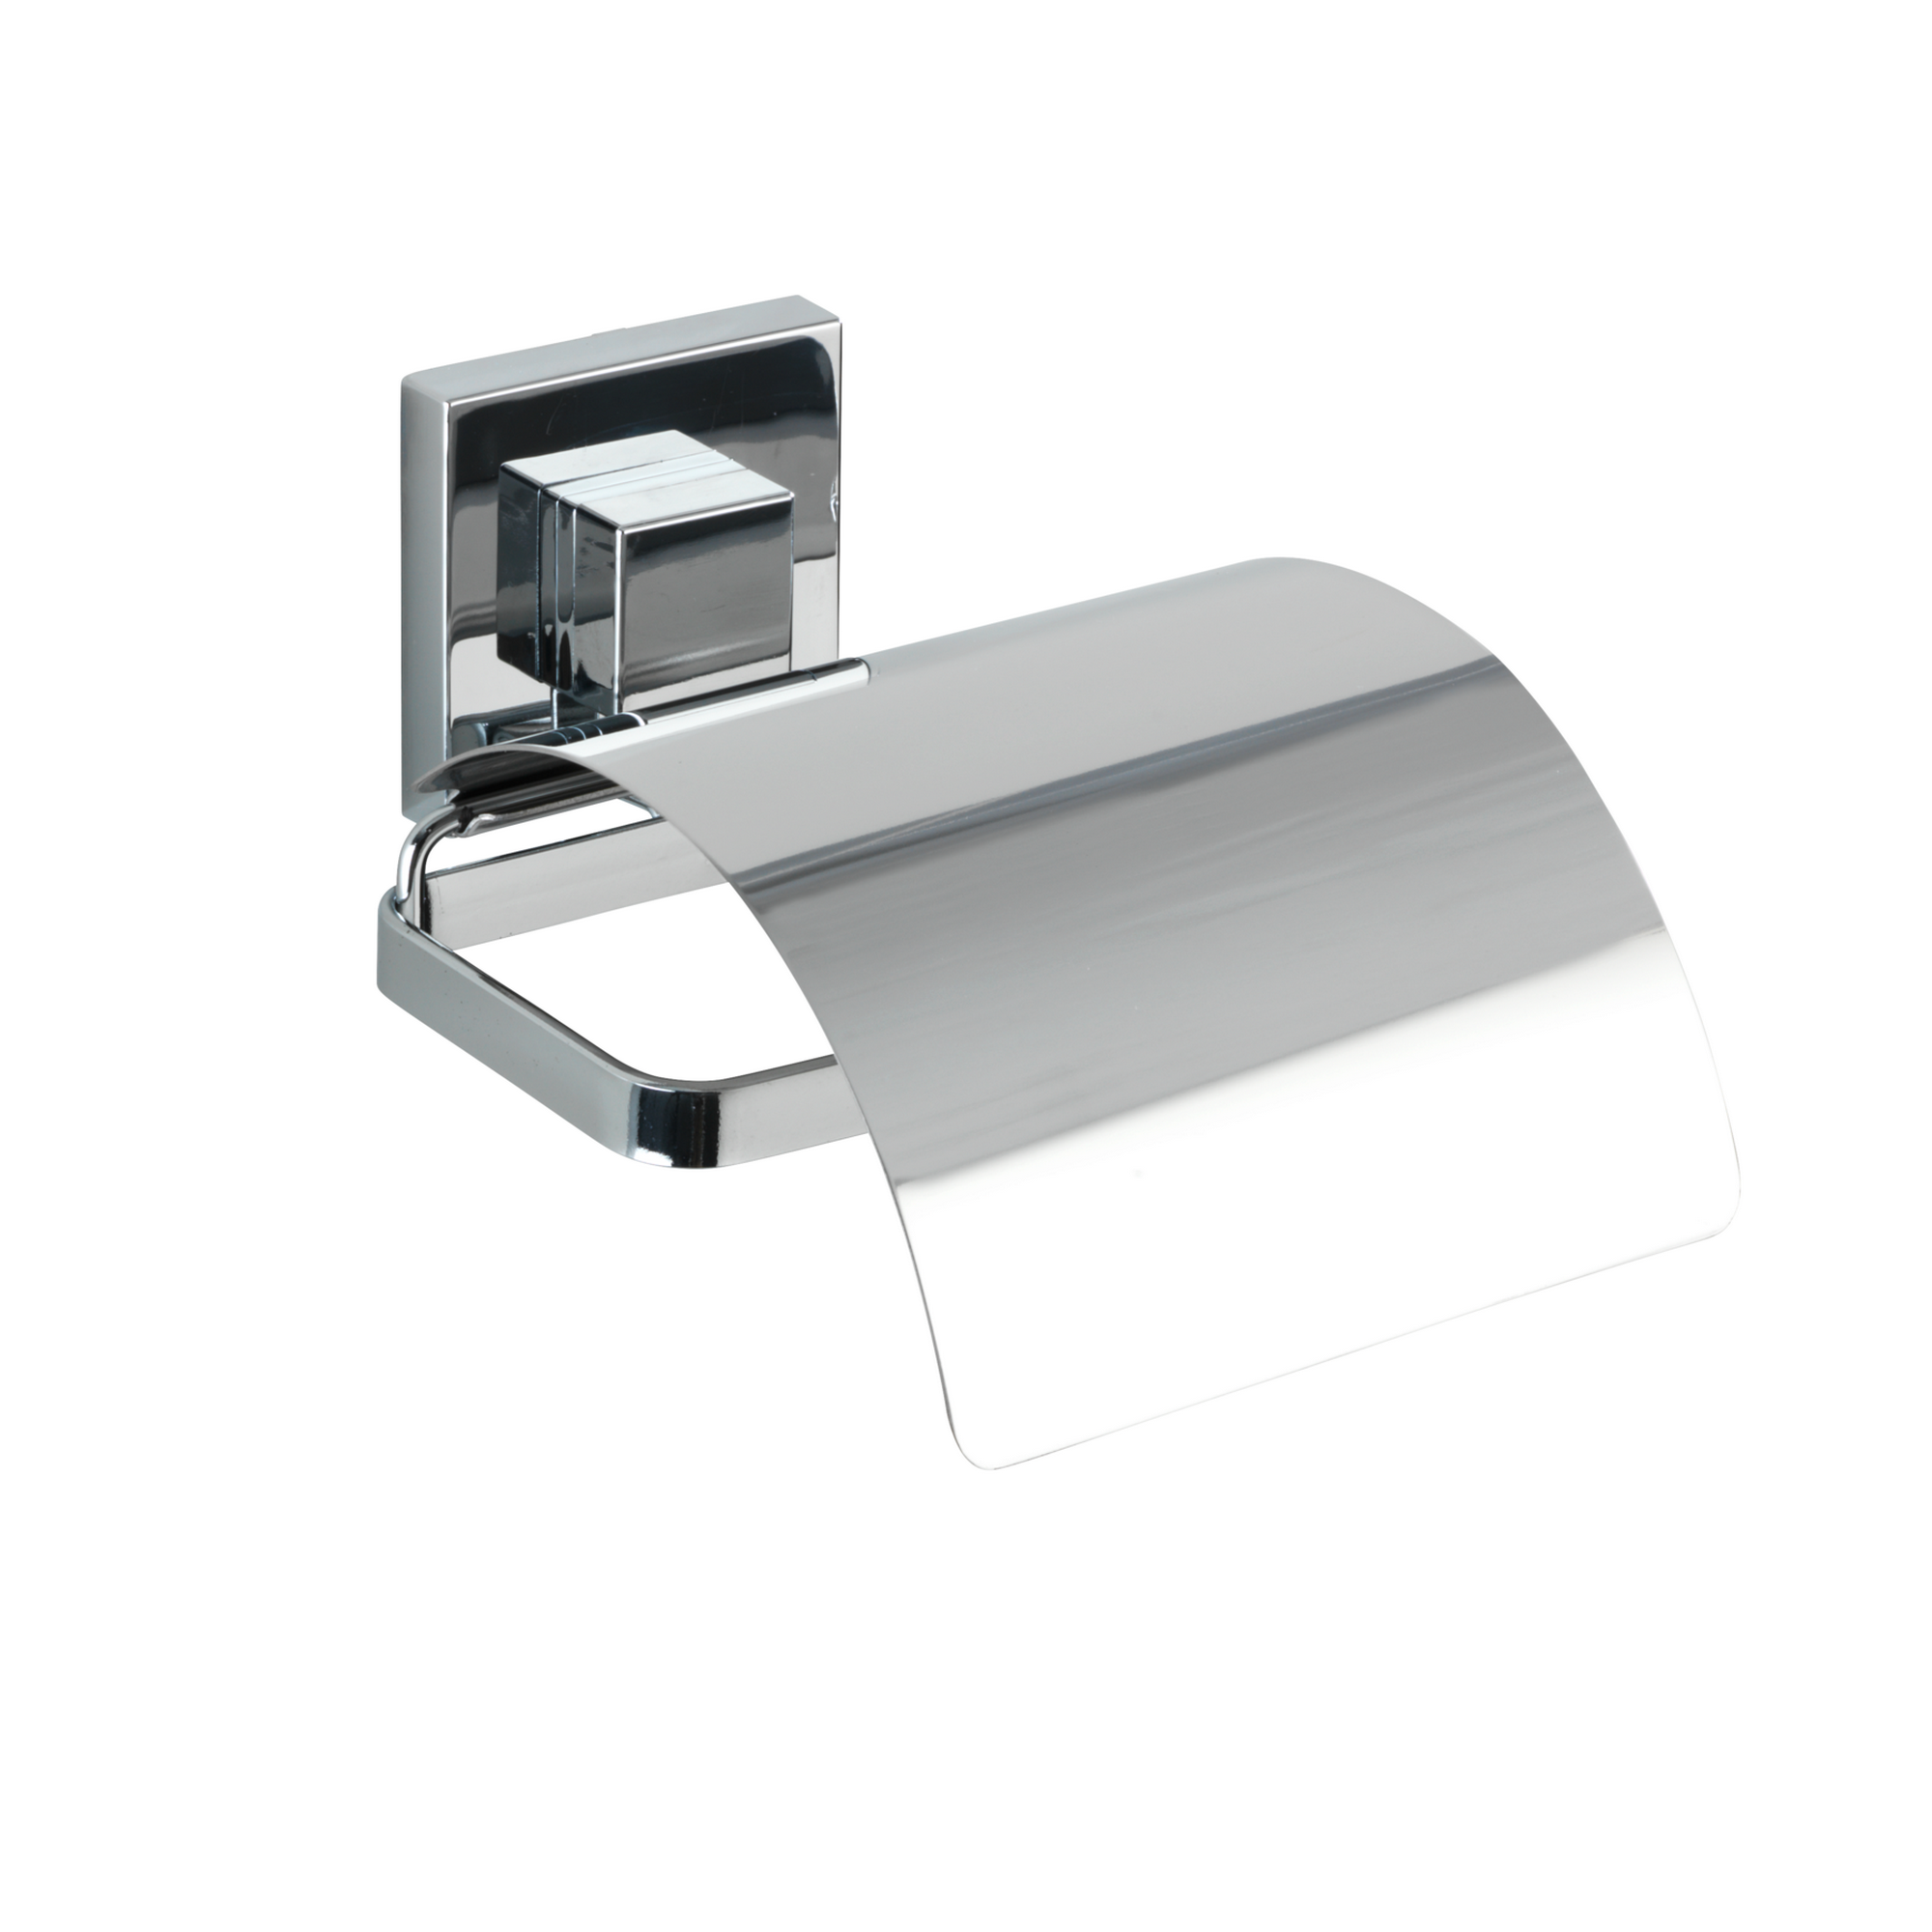 Toilettenpapierhalter 'Vacuum-Loc Quadro' Edelstahl, mit Deckel + product picture